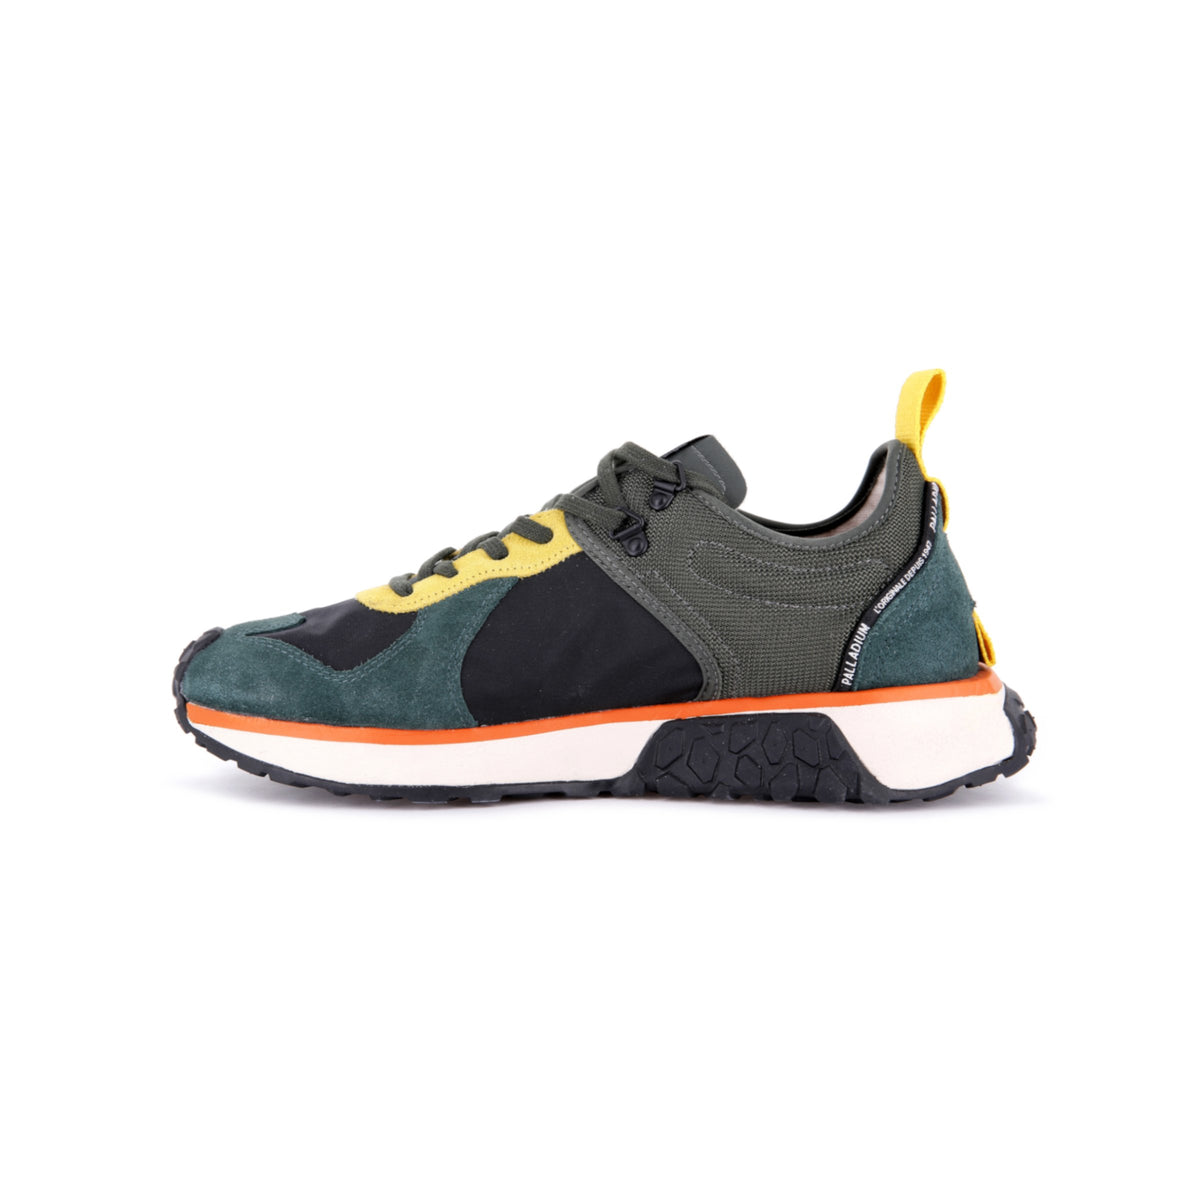 Troop Runner (Sneaker) - Duffel/Black | Palladium South Africa